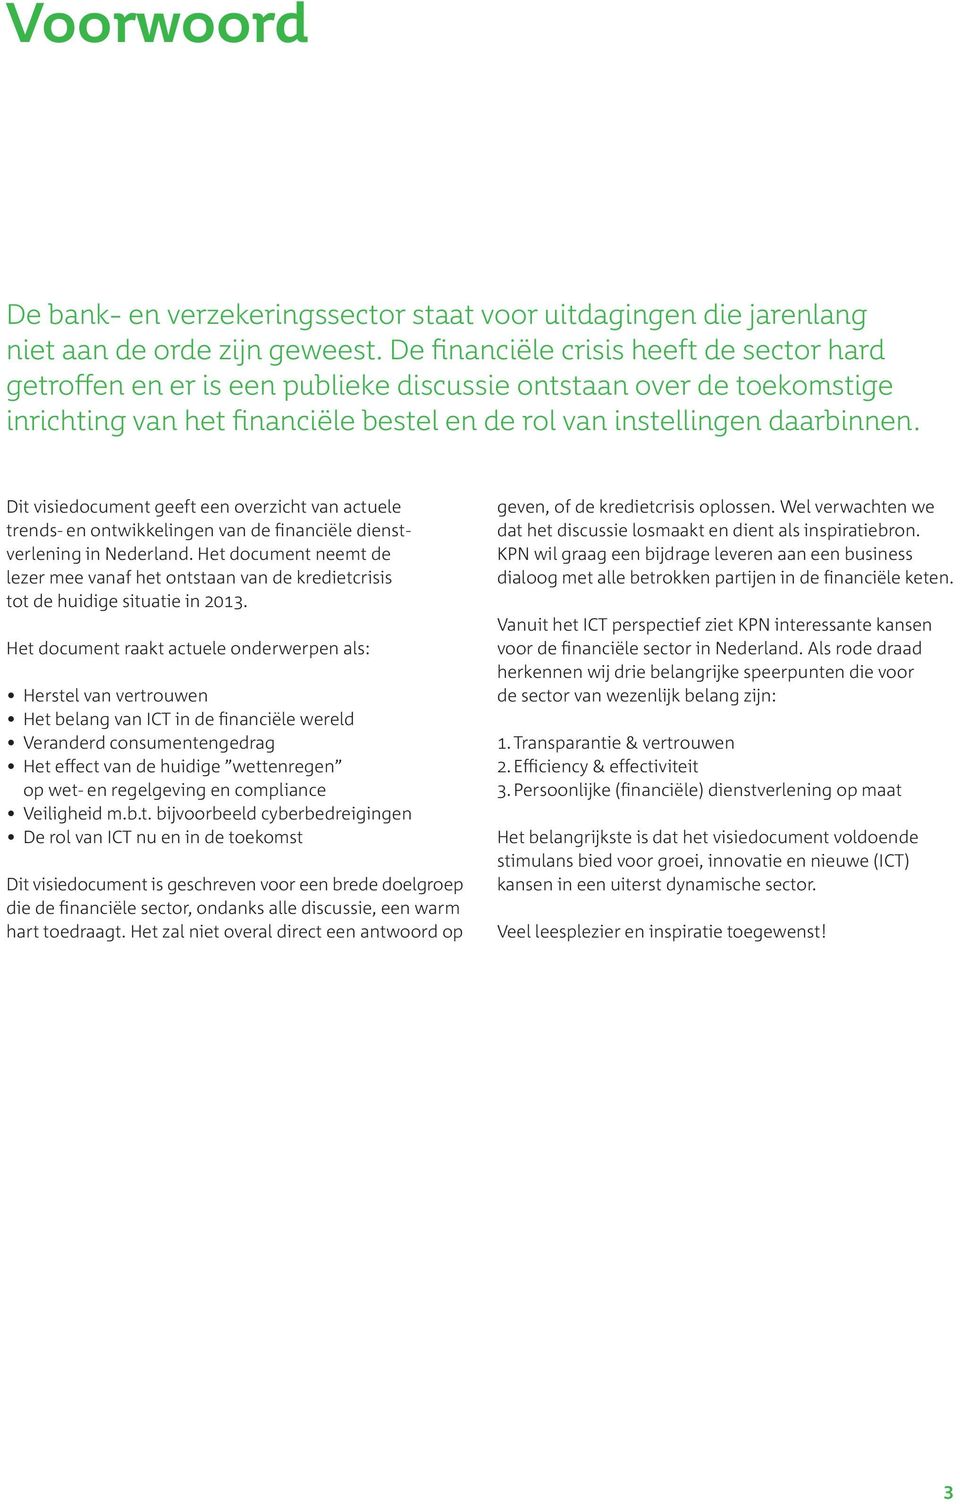 Dit visiedocument geeft een overzicht van actuele trends- en ontwikkelingen van de financiële dienstverlening in Nederland.